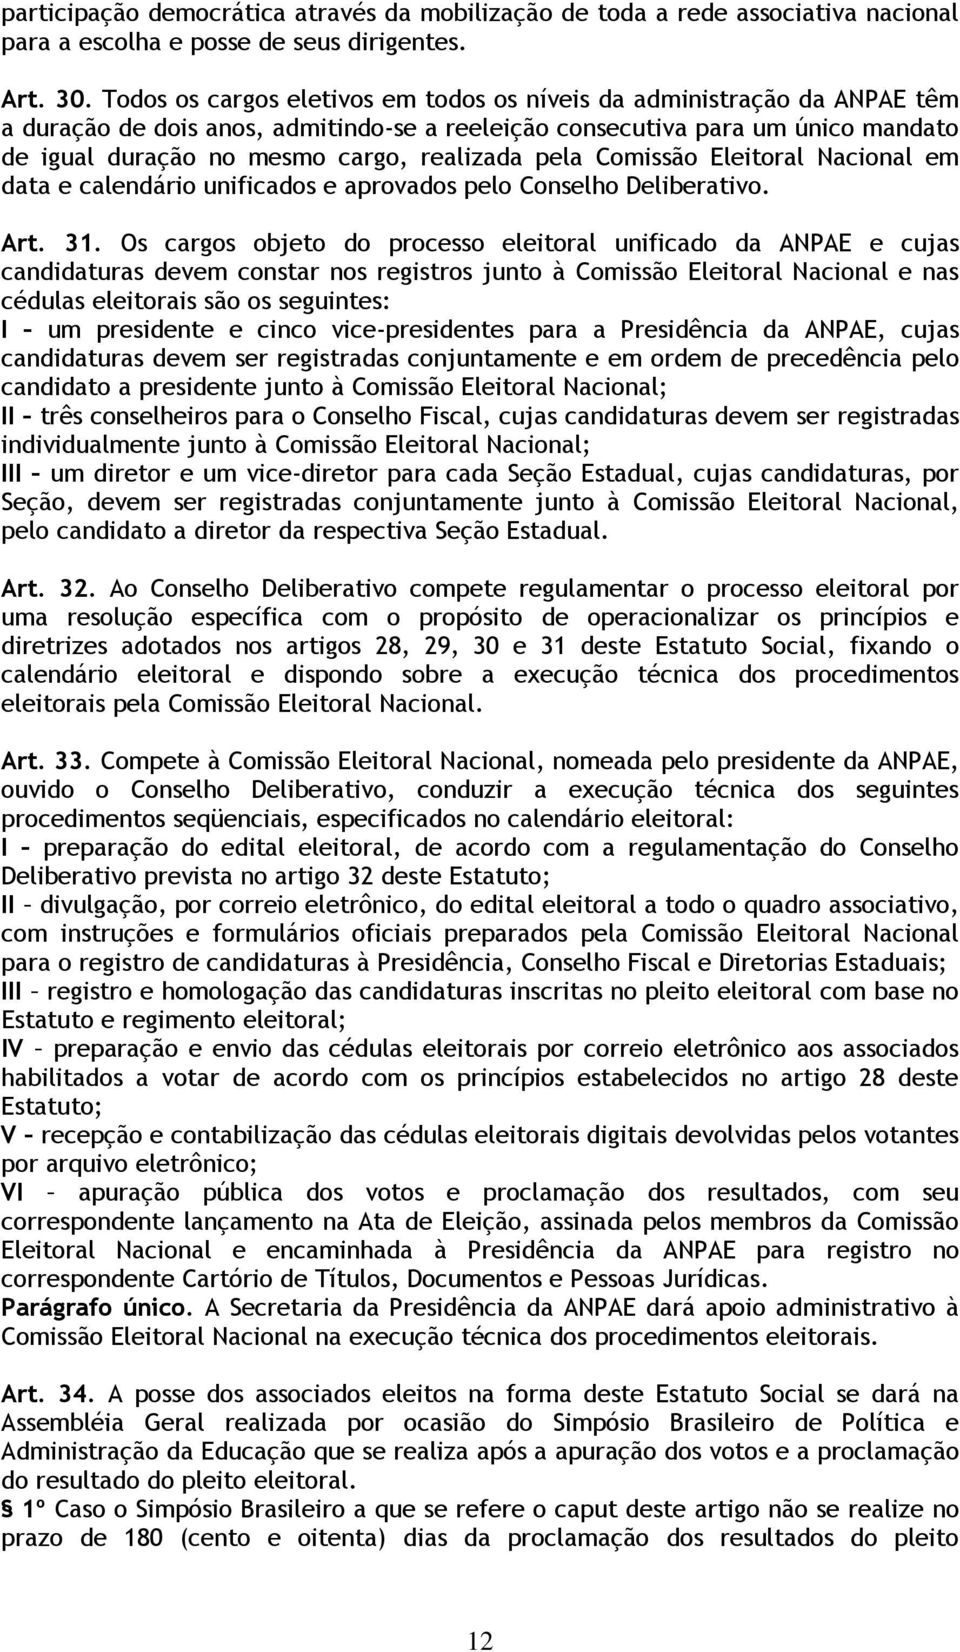 pela Comissão Eleitoral Nacional em data e calendário unificados e aprovados pelo Conselho Deliberativo. Art. 31.